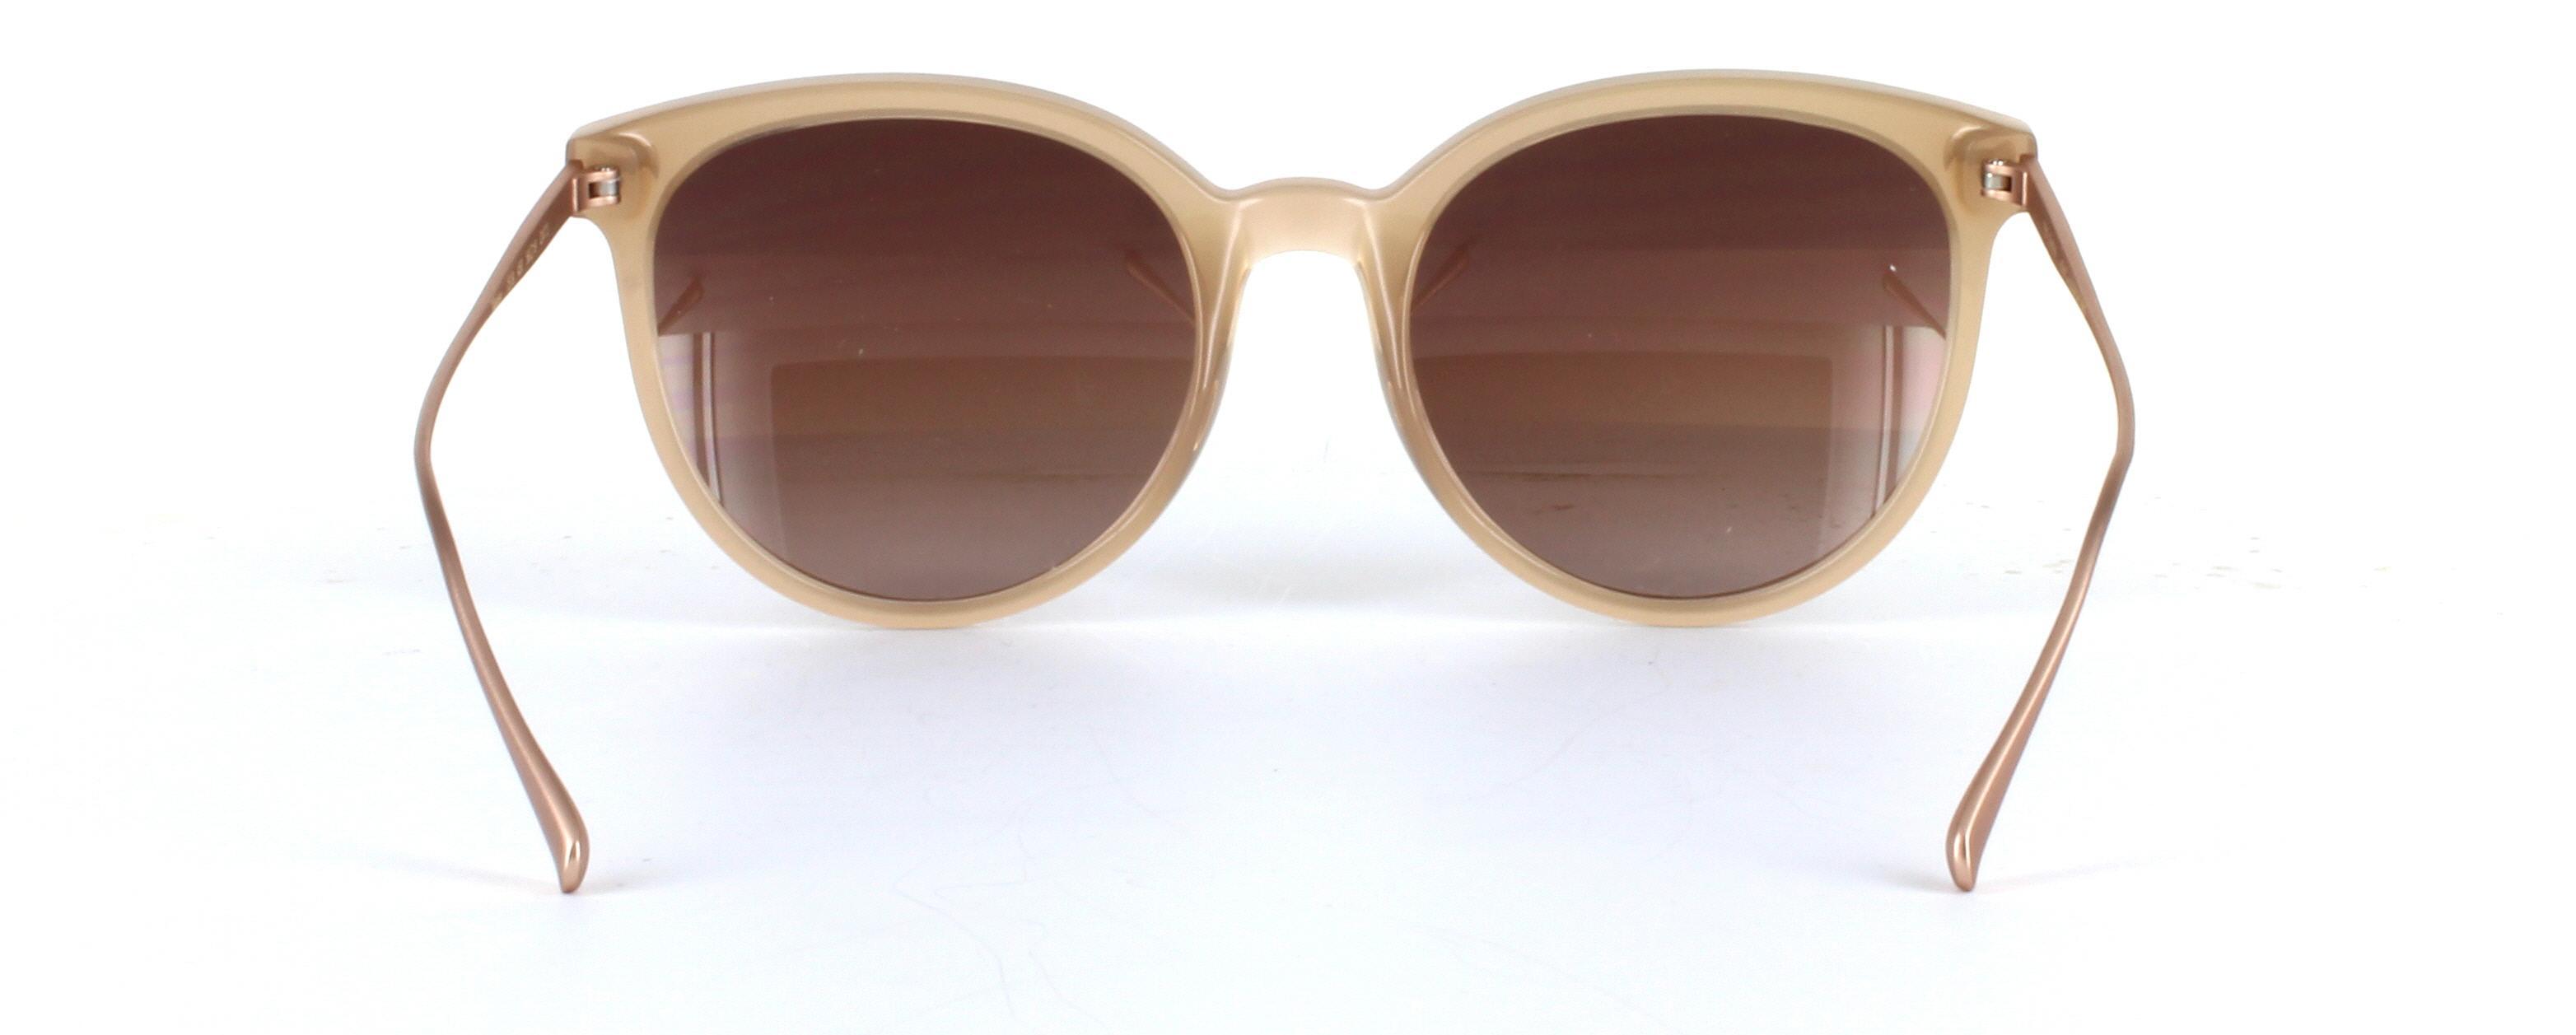 Ted Baker Maren Light Brown Full Rim Plastic Prescription Sunglasses - Image View 3